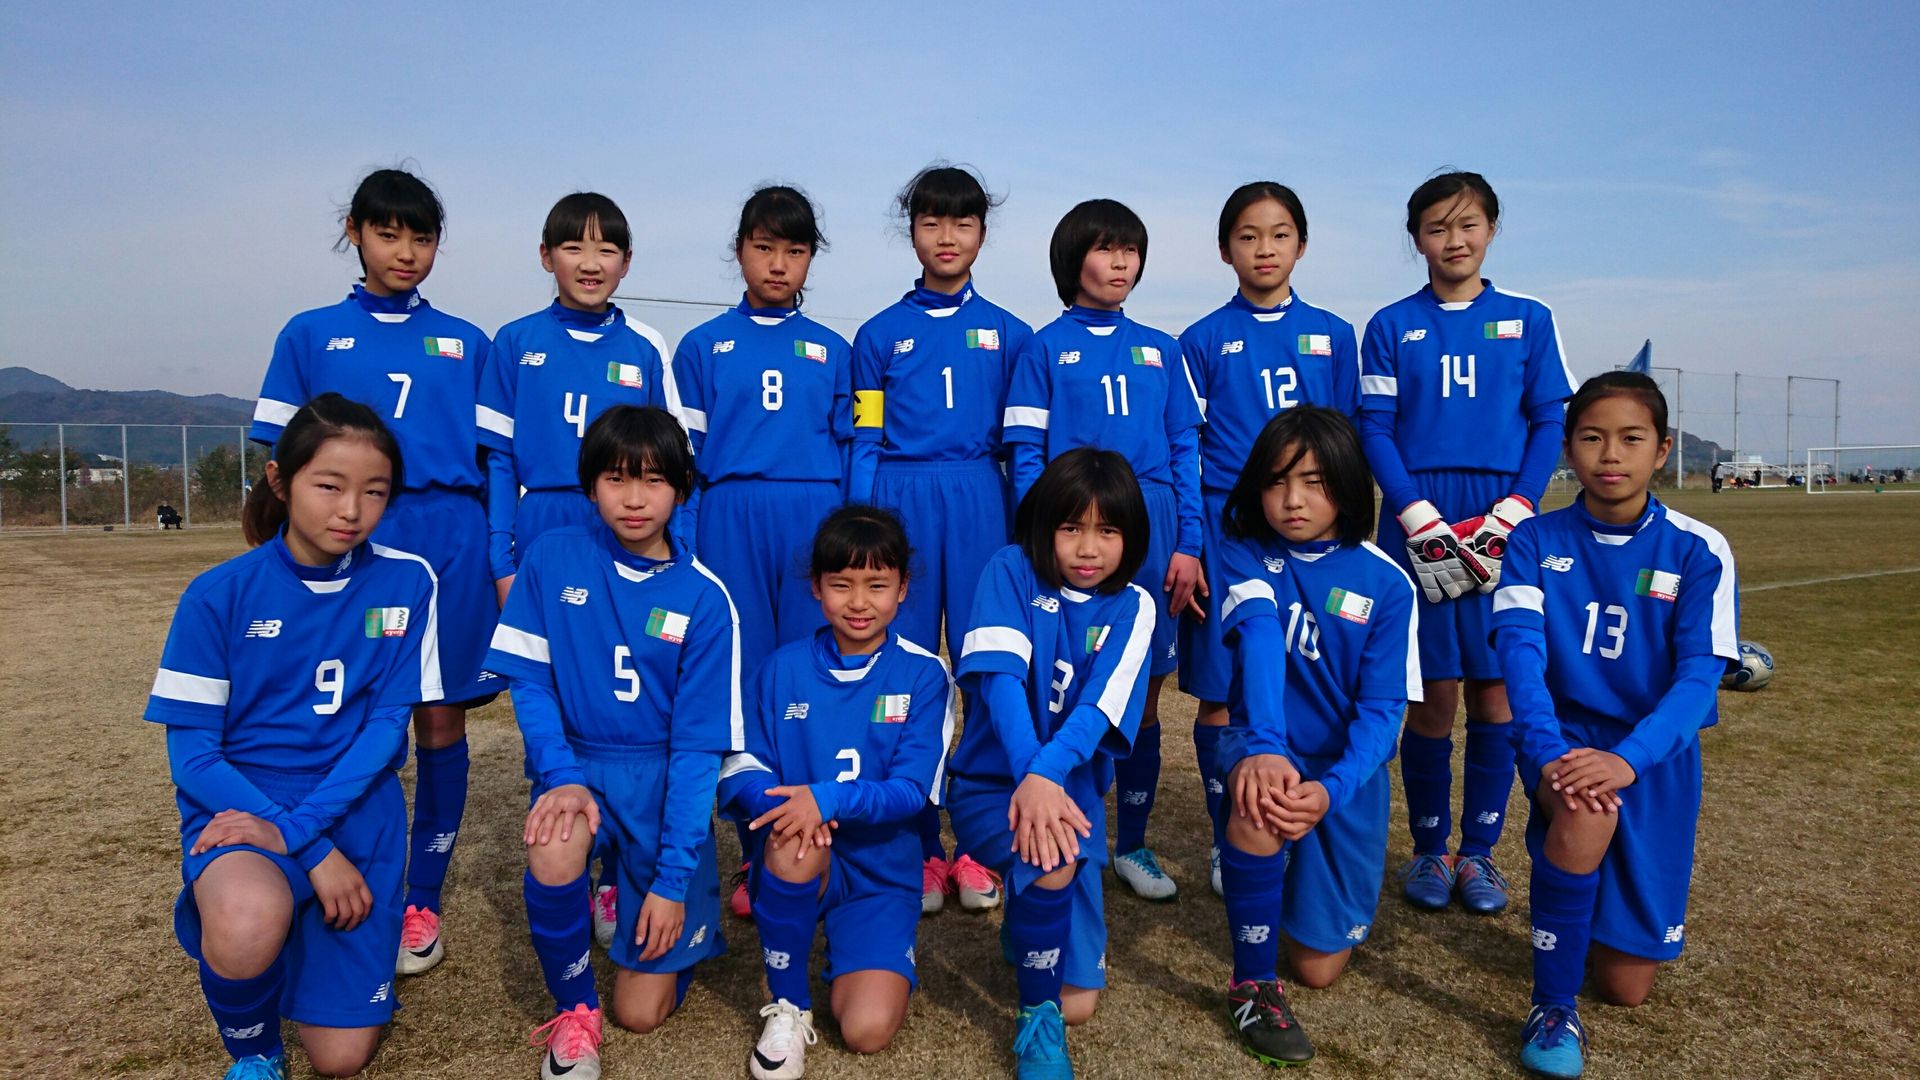 12月25日(月)愛知県小学生女子サッカー選手権大会 第3位 : WYVERN FC 刈谷市少年サッカークラブ